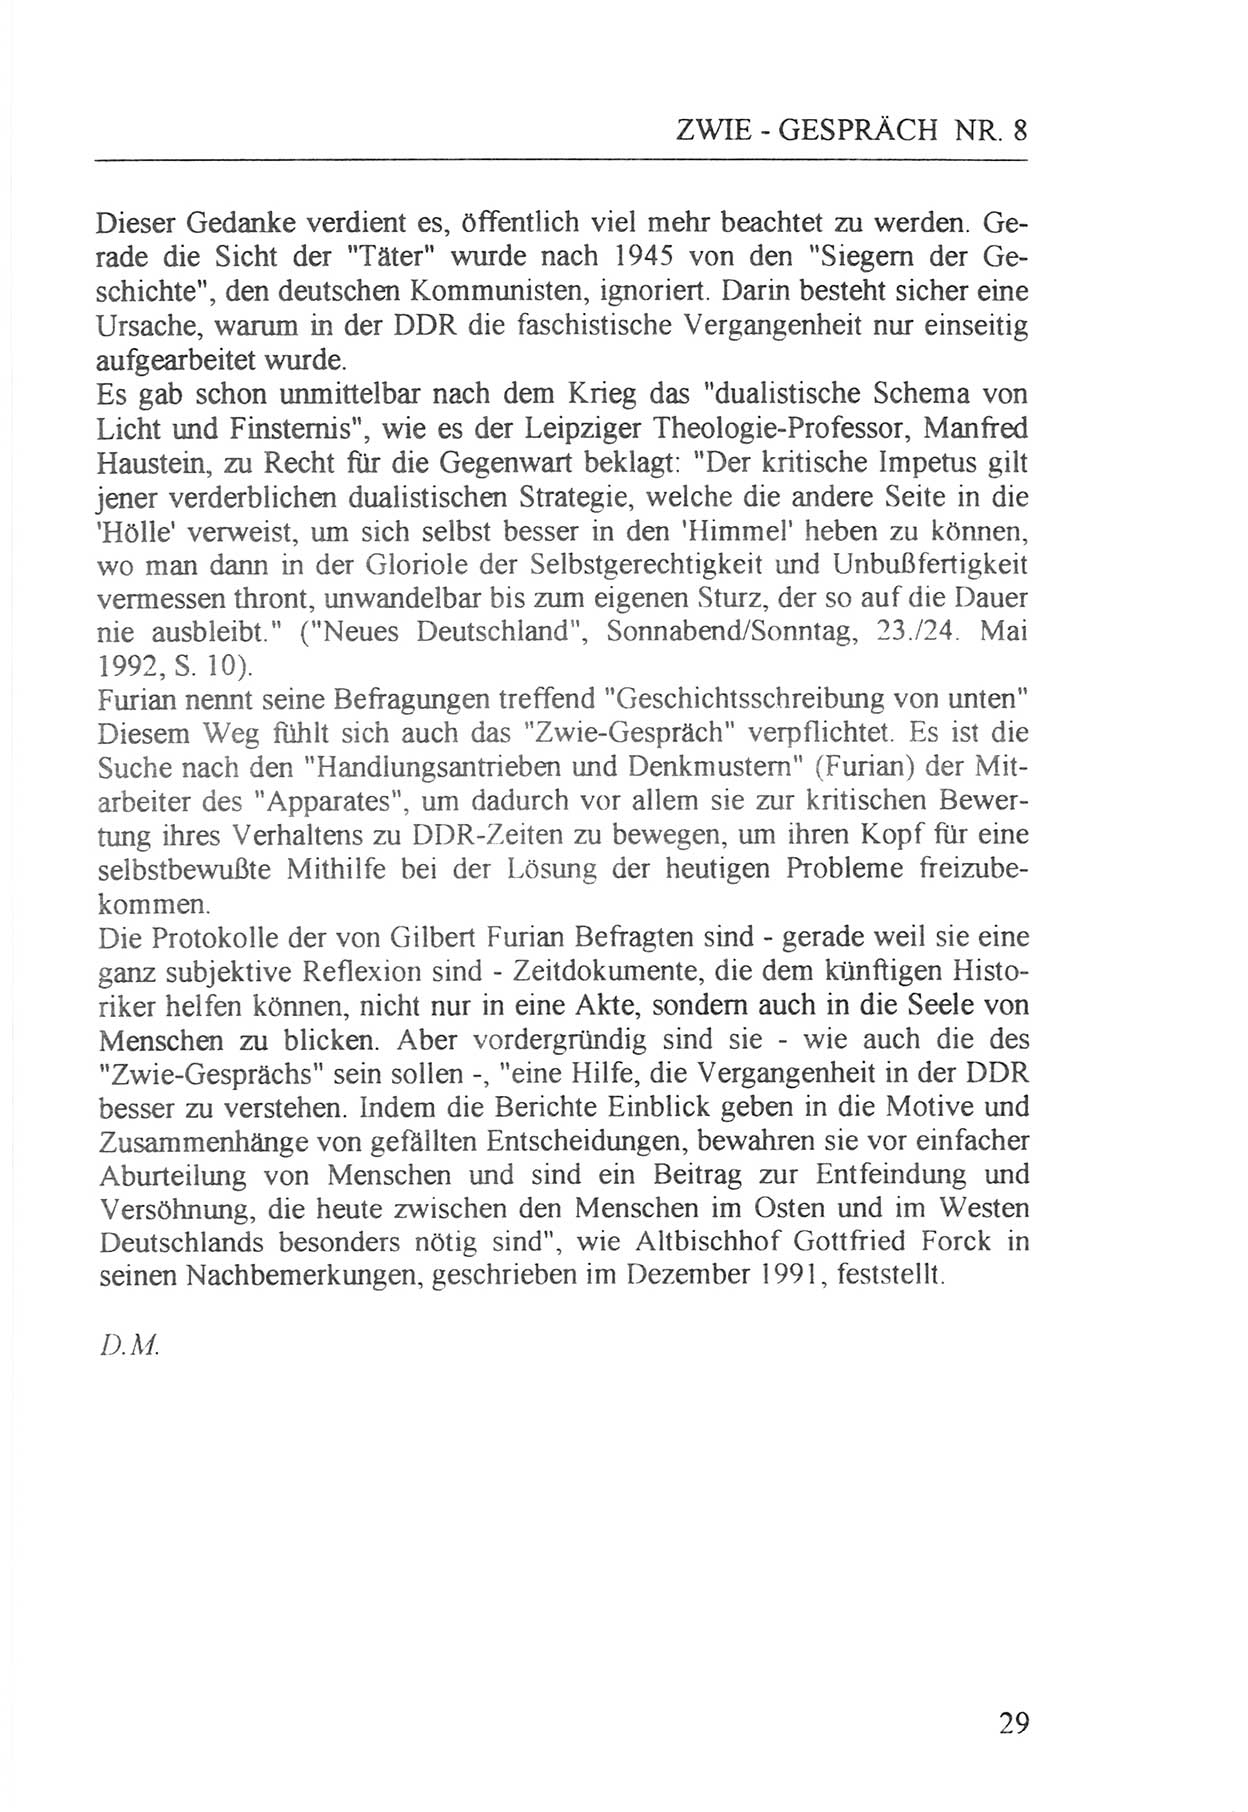 Zwie-Gespräch, Beiträge zur Aufarbeitung der Staatssicherheits-Vergangenheit [Deutsche Demokratische Republik (DDR)], Ausgabe Nr. 8, Berlin 1992, Seite 29 (Zwie-Gespr. Ausg. 8 1992, S. 29)